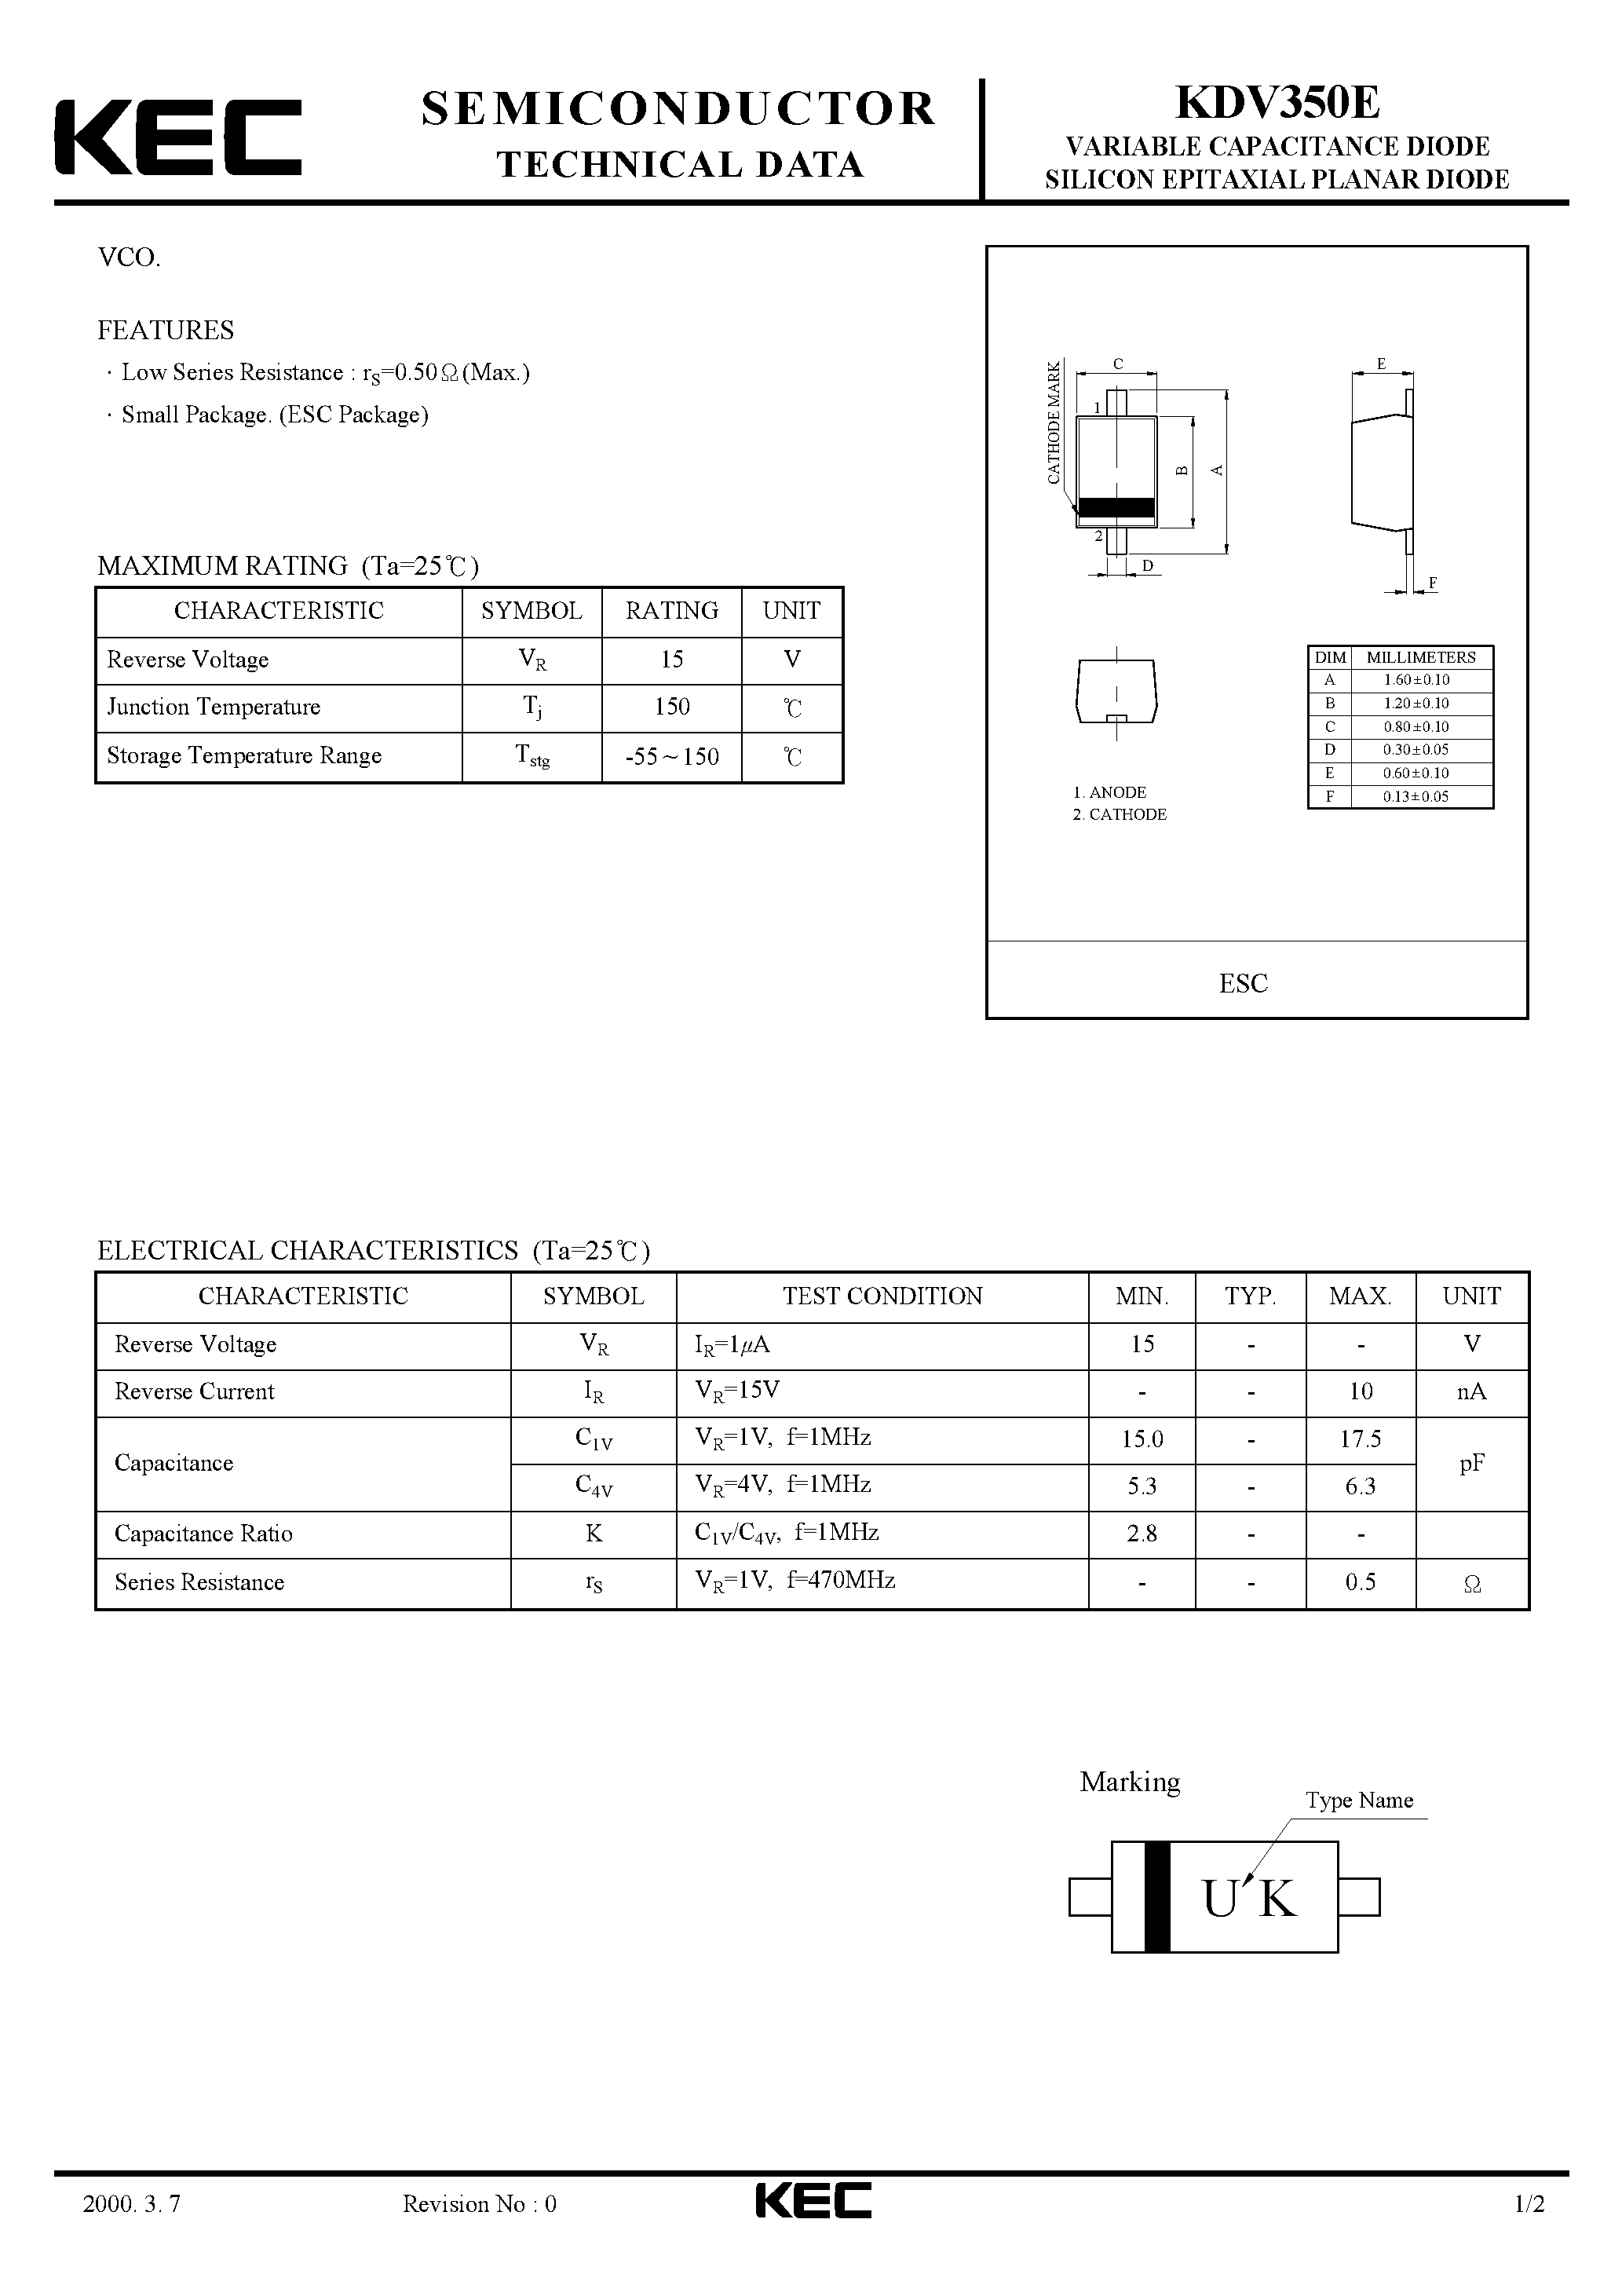 Datasheet KDV350E - VARIABLE CAPACITANCE DIODE SILICON EPITAXIAL PLANAR DIODE(VCO) page 1